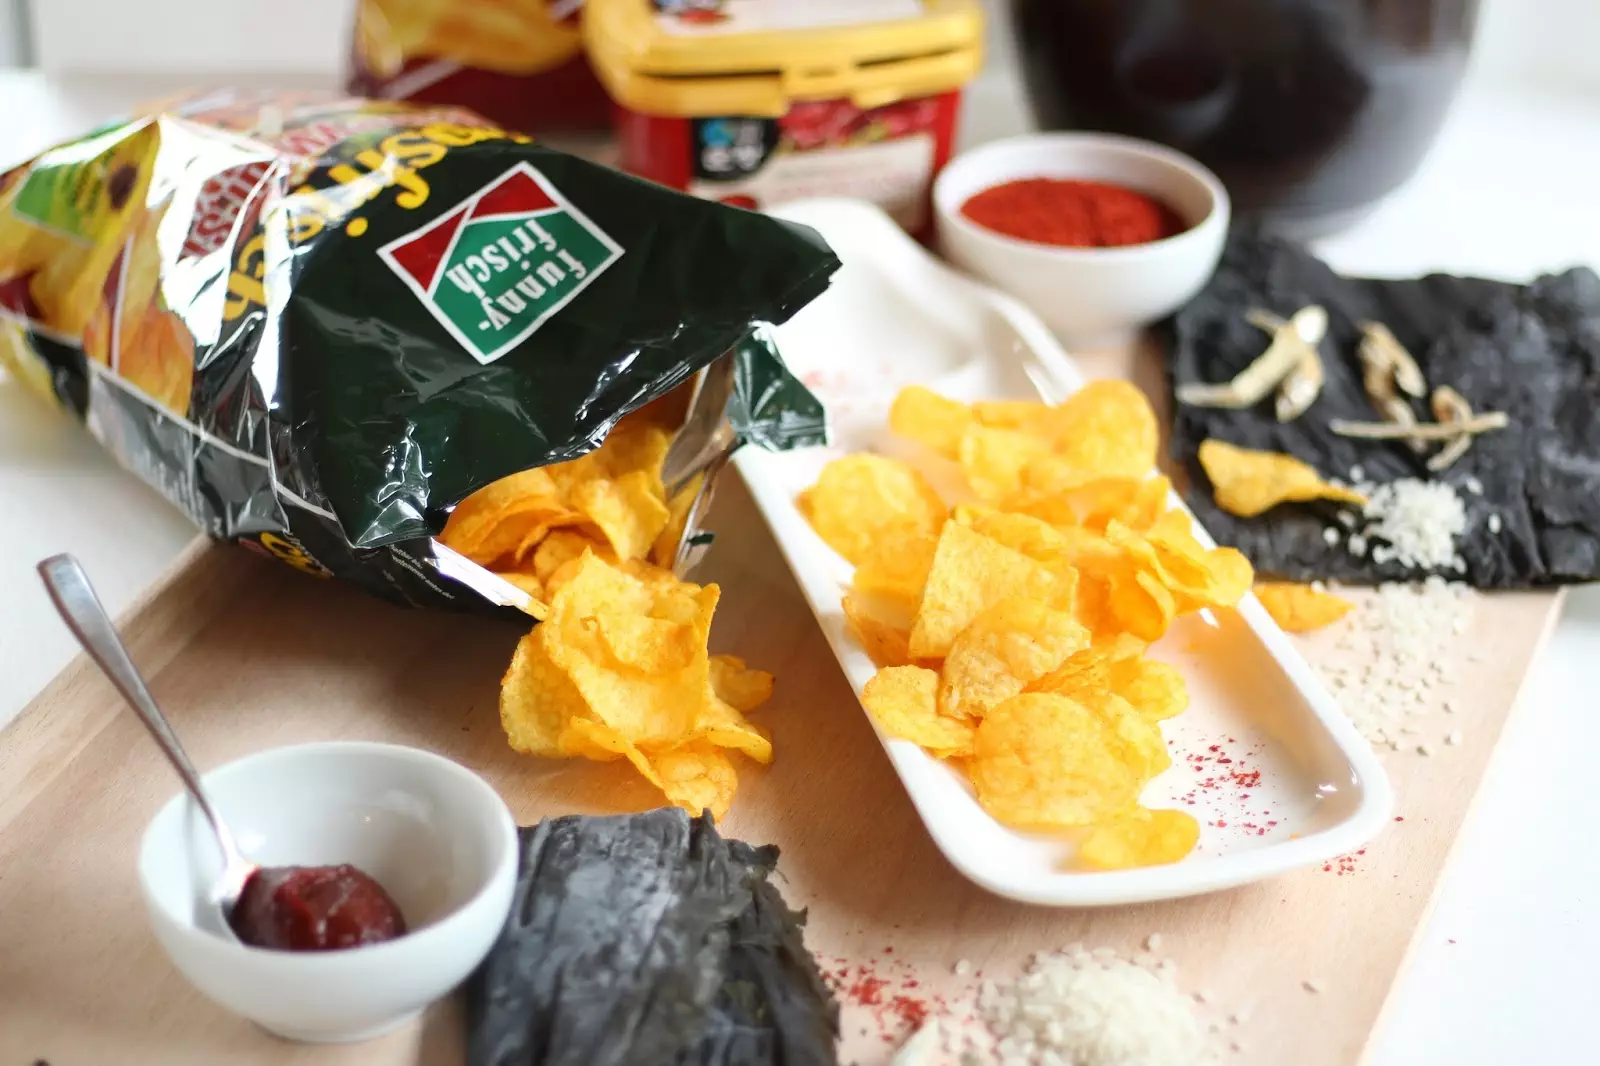 Werbung: Tteokbokki Chips! Unsere brandneue Chips-Sorte für die funny-frisch Chips-Wahl 2018